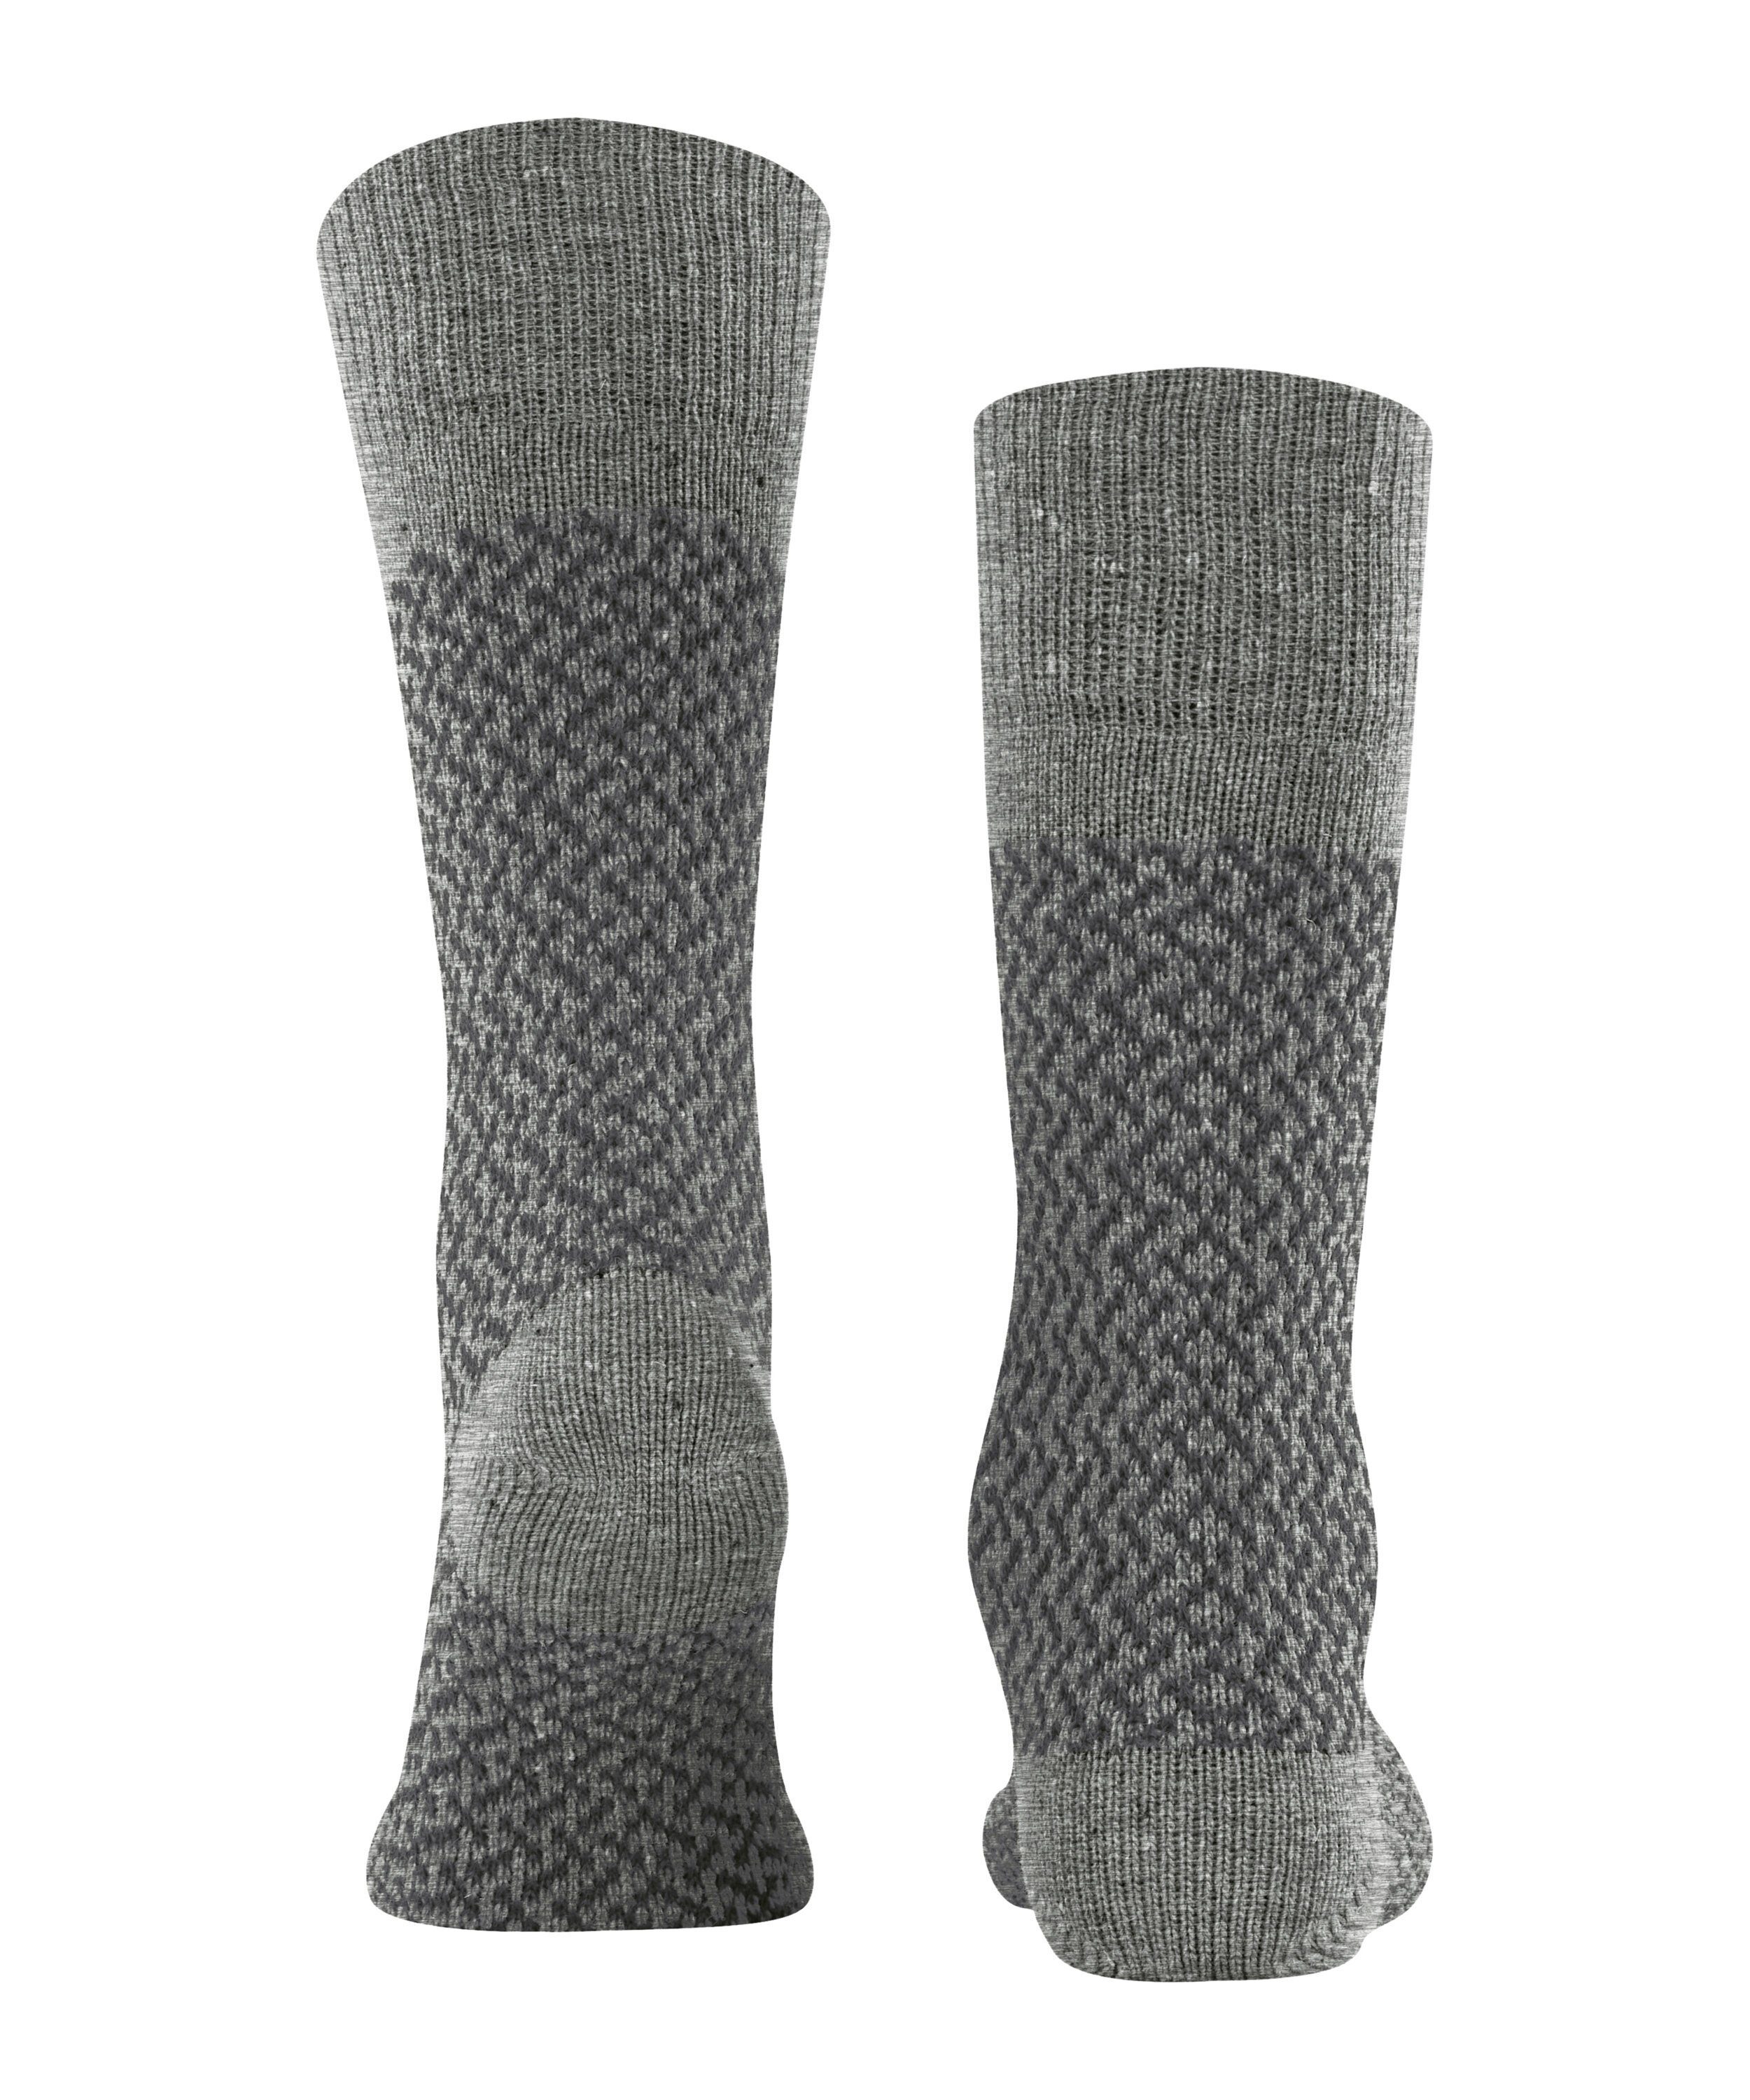 Socken (1-Paar) Esprit Boot (3400) Twill grey light